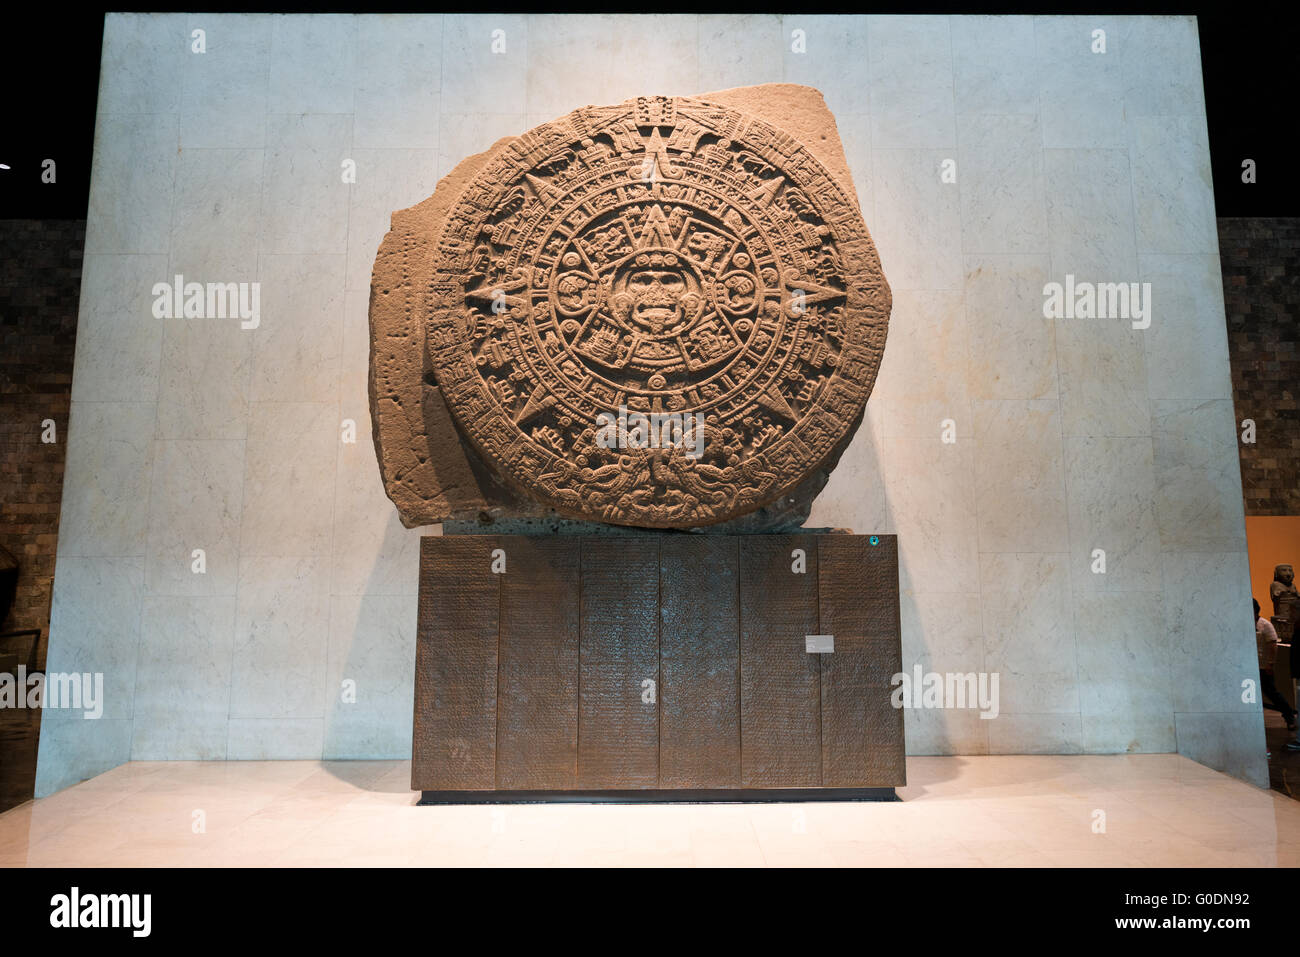 La VILLE DE MEXICO, MEXIQUE--estimé à ce jour pour le début du xvie siècle ou fin du 15e siècle, la Pierre du Soleil est un grand disque près de 12 pieds de large et pesant 24 tonnes. Découvert en 1790 dans la Plaza Mayor, la Pierre du Soleil a été à l'origine confondue avec le calendrier aztèque. Il a plus récemment été identifié comme un grand autel sacrificiel de gladiateurs, connu comme un temalacatl. Il n'est pas terminé en raison d'une fissure profonde qui court d'un côté vers le centre de la pièce à l'arrière. Malgré la rupture, il a été utilisé pour mettre en scène les combats entre les guerriers du tlacaxipehualiztli cérémonie. Il Banque D'Images